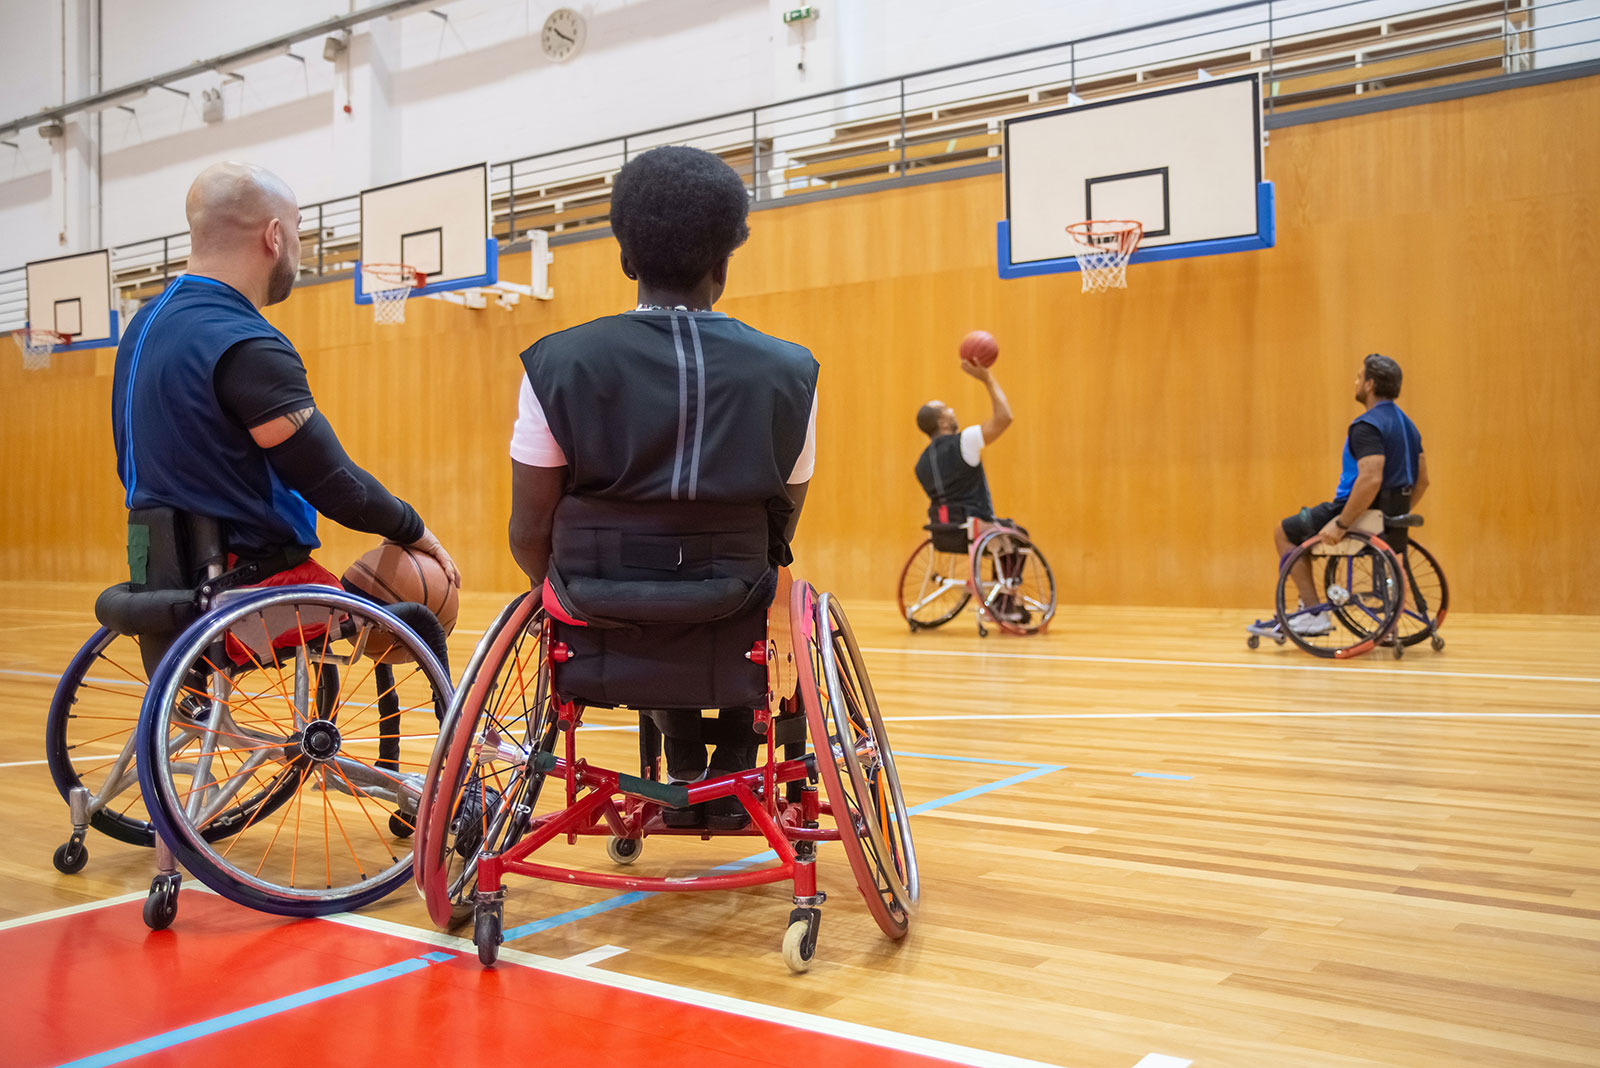 Männer spielen Rollstuhlbasketball in einer Halle